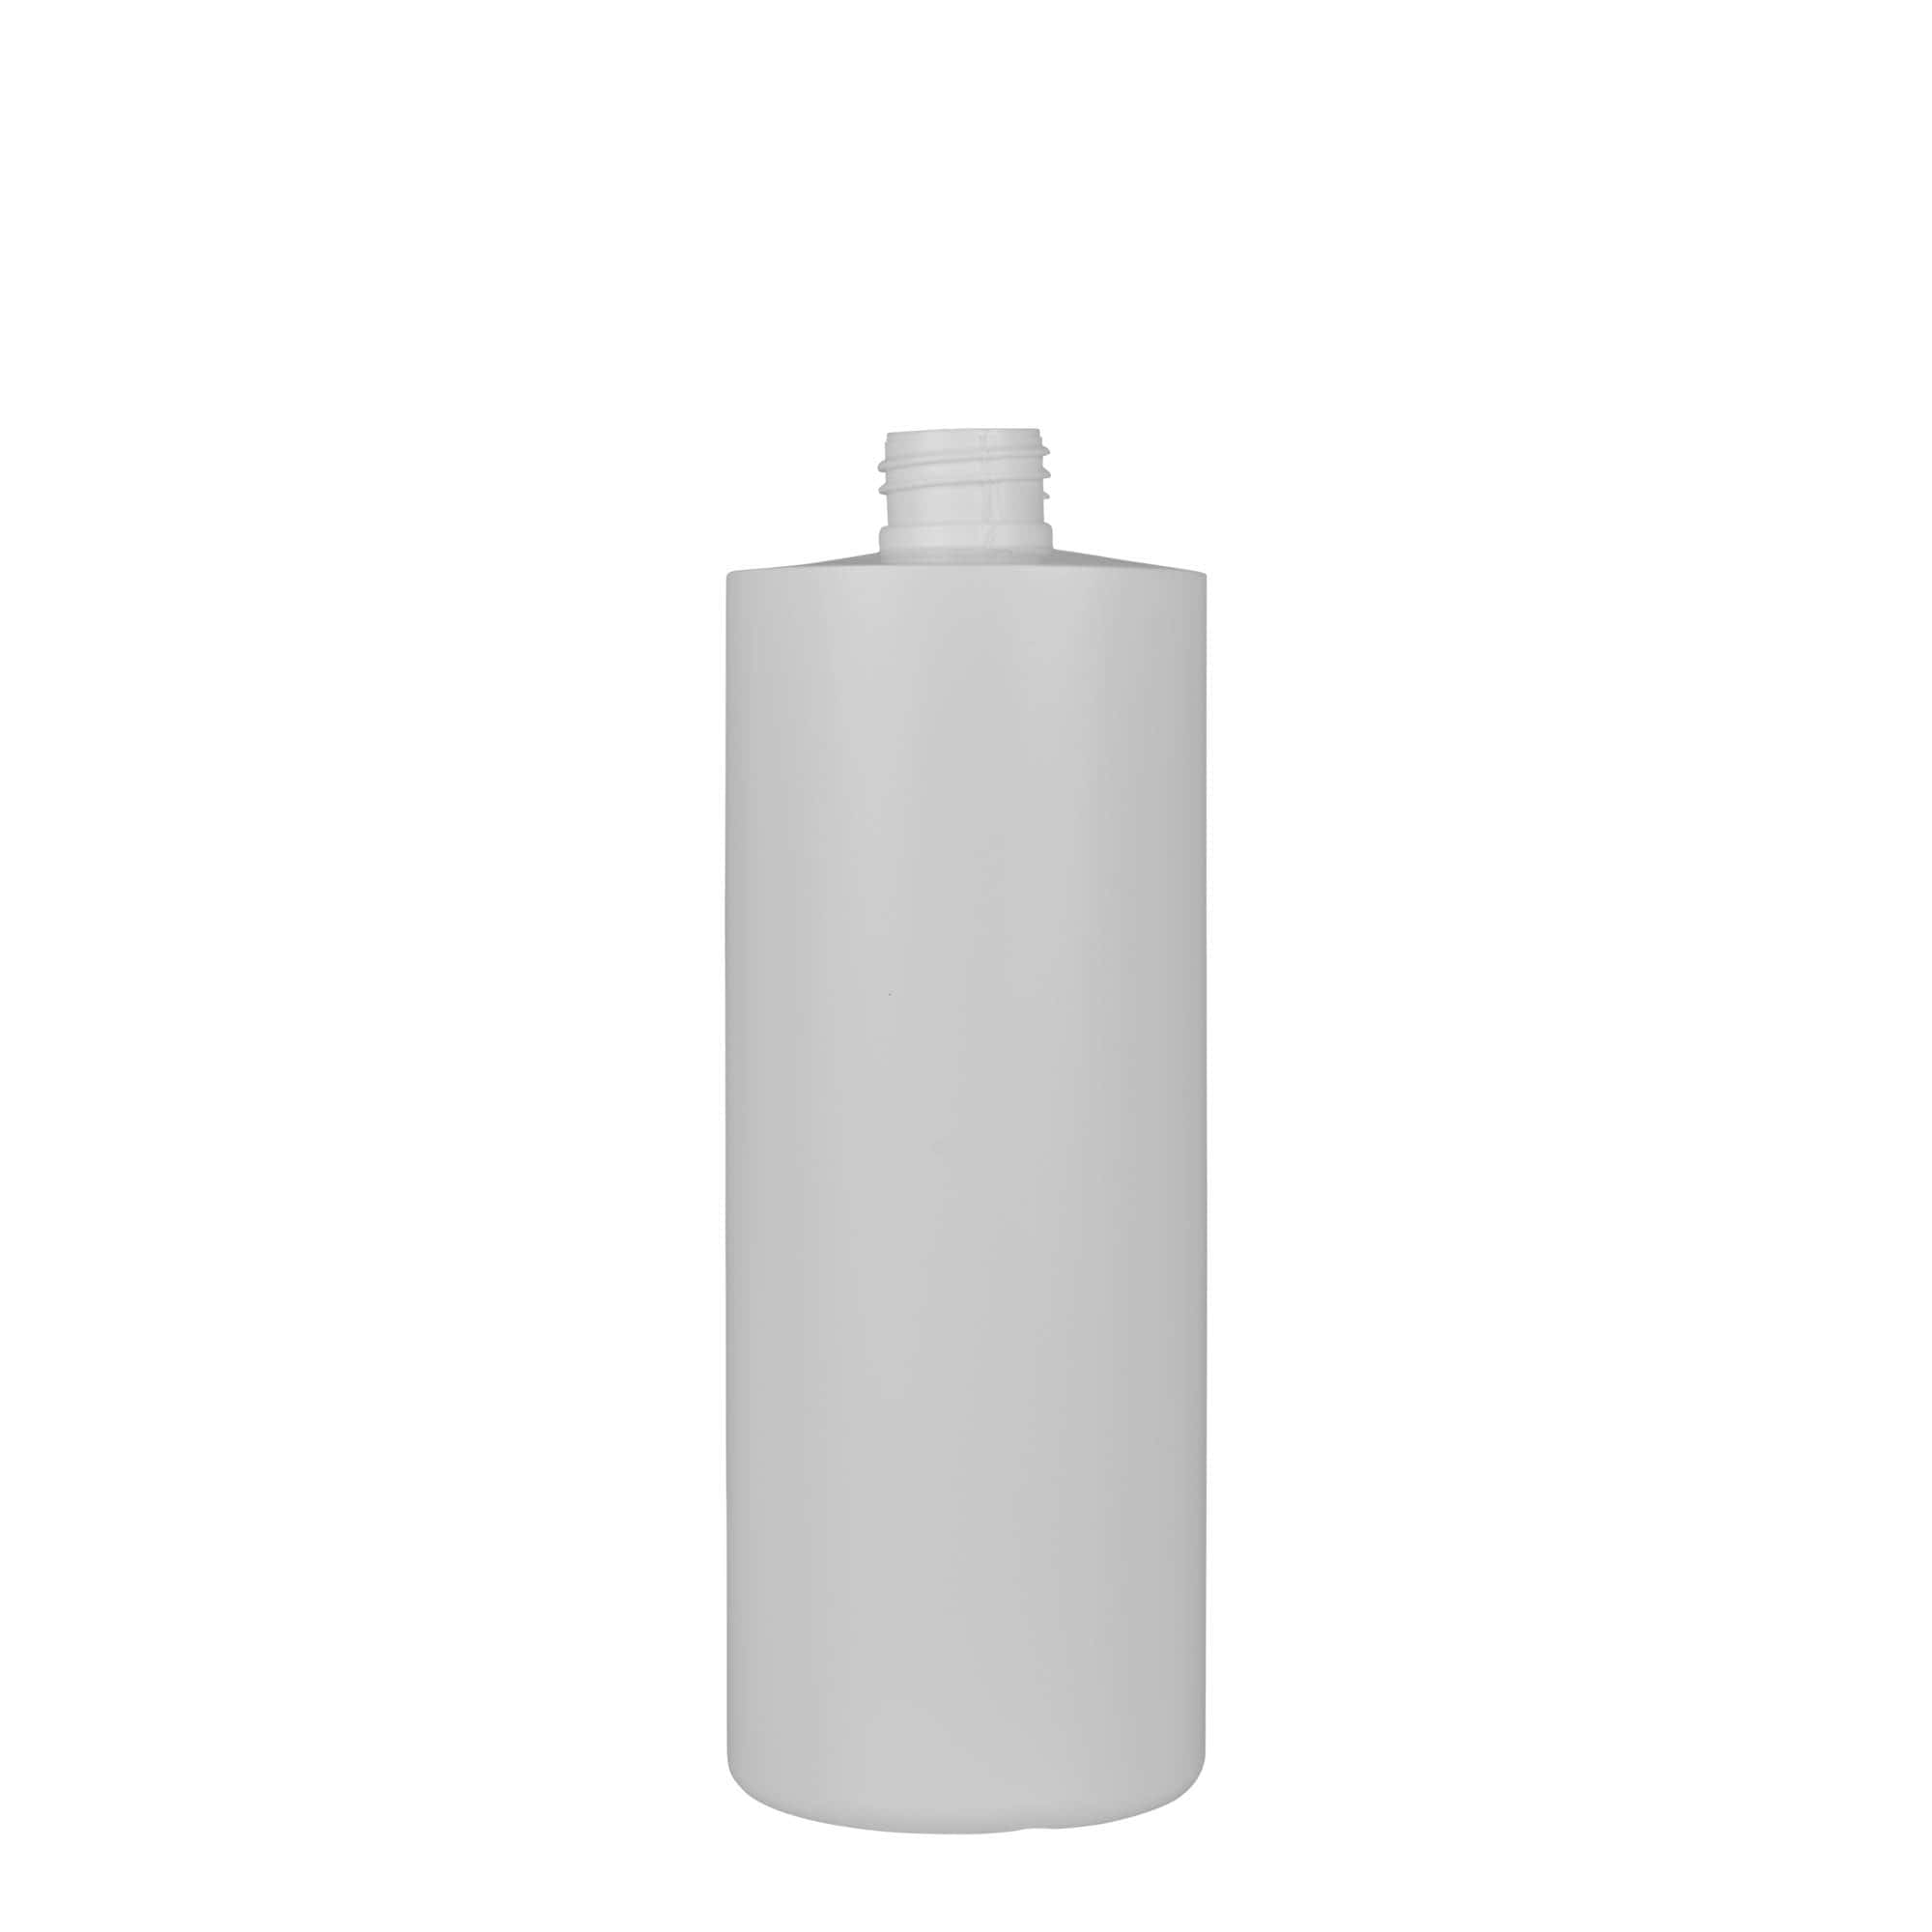 500 ml butelka z tworzywa sztucznego 'Pipe', Green HDPE, kolor biały, zamknięcie: GPI 24/410